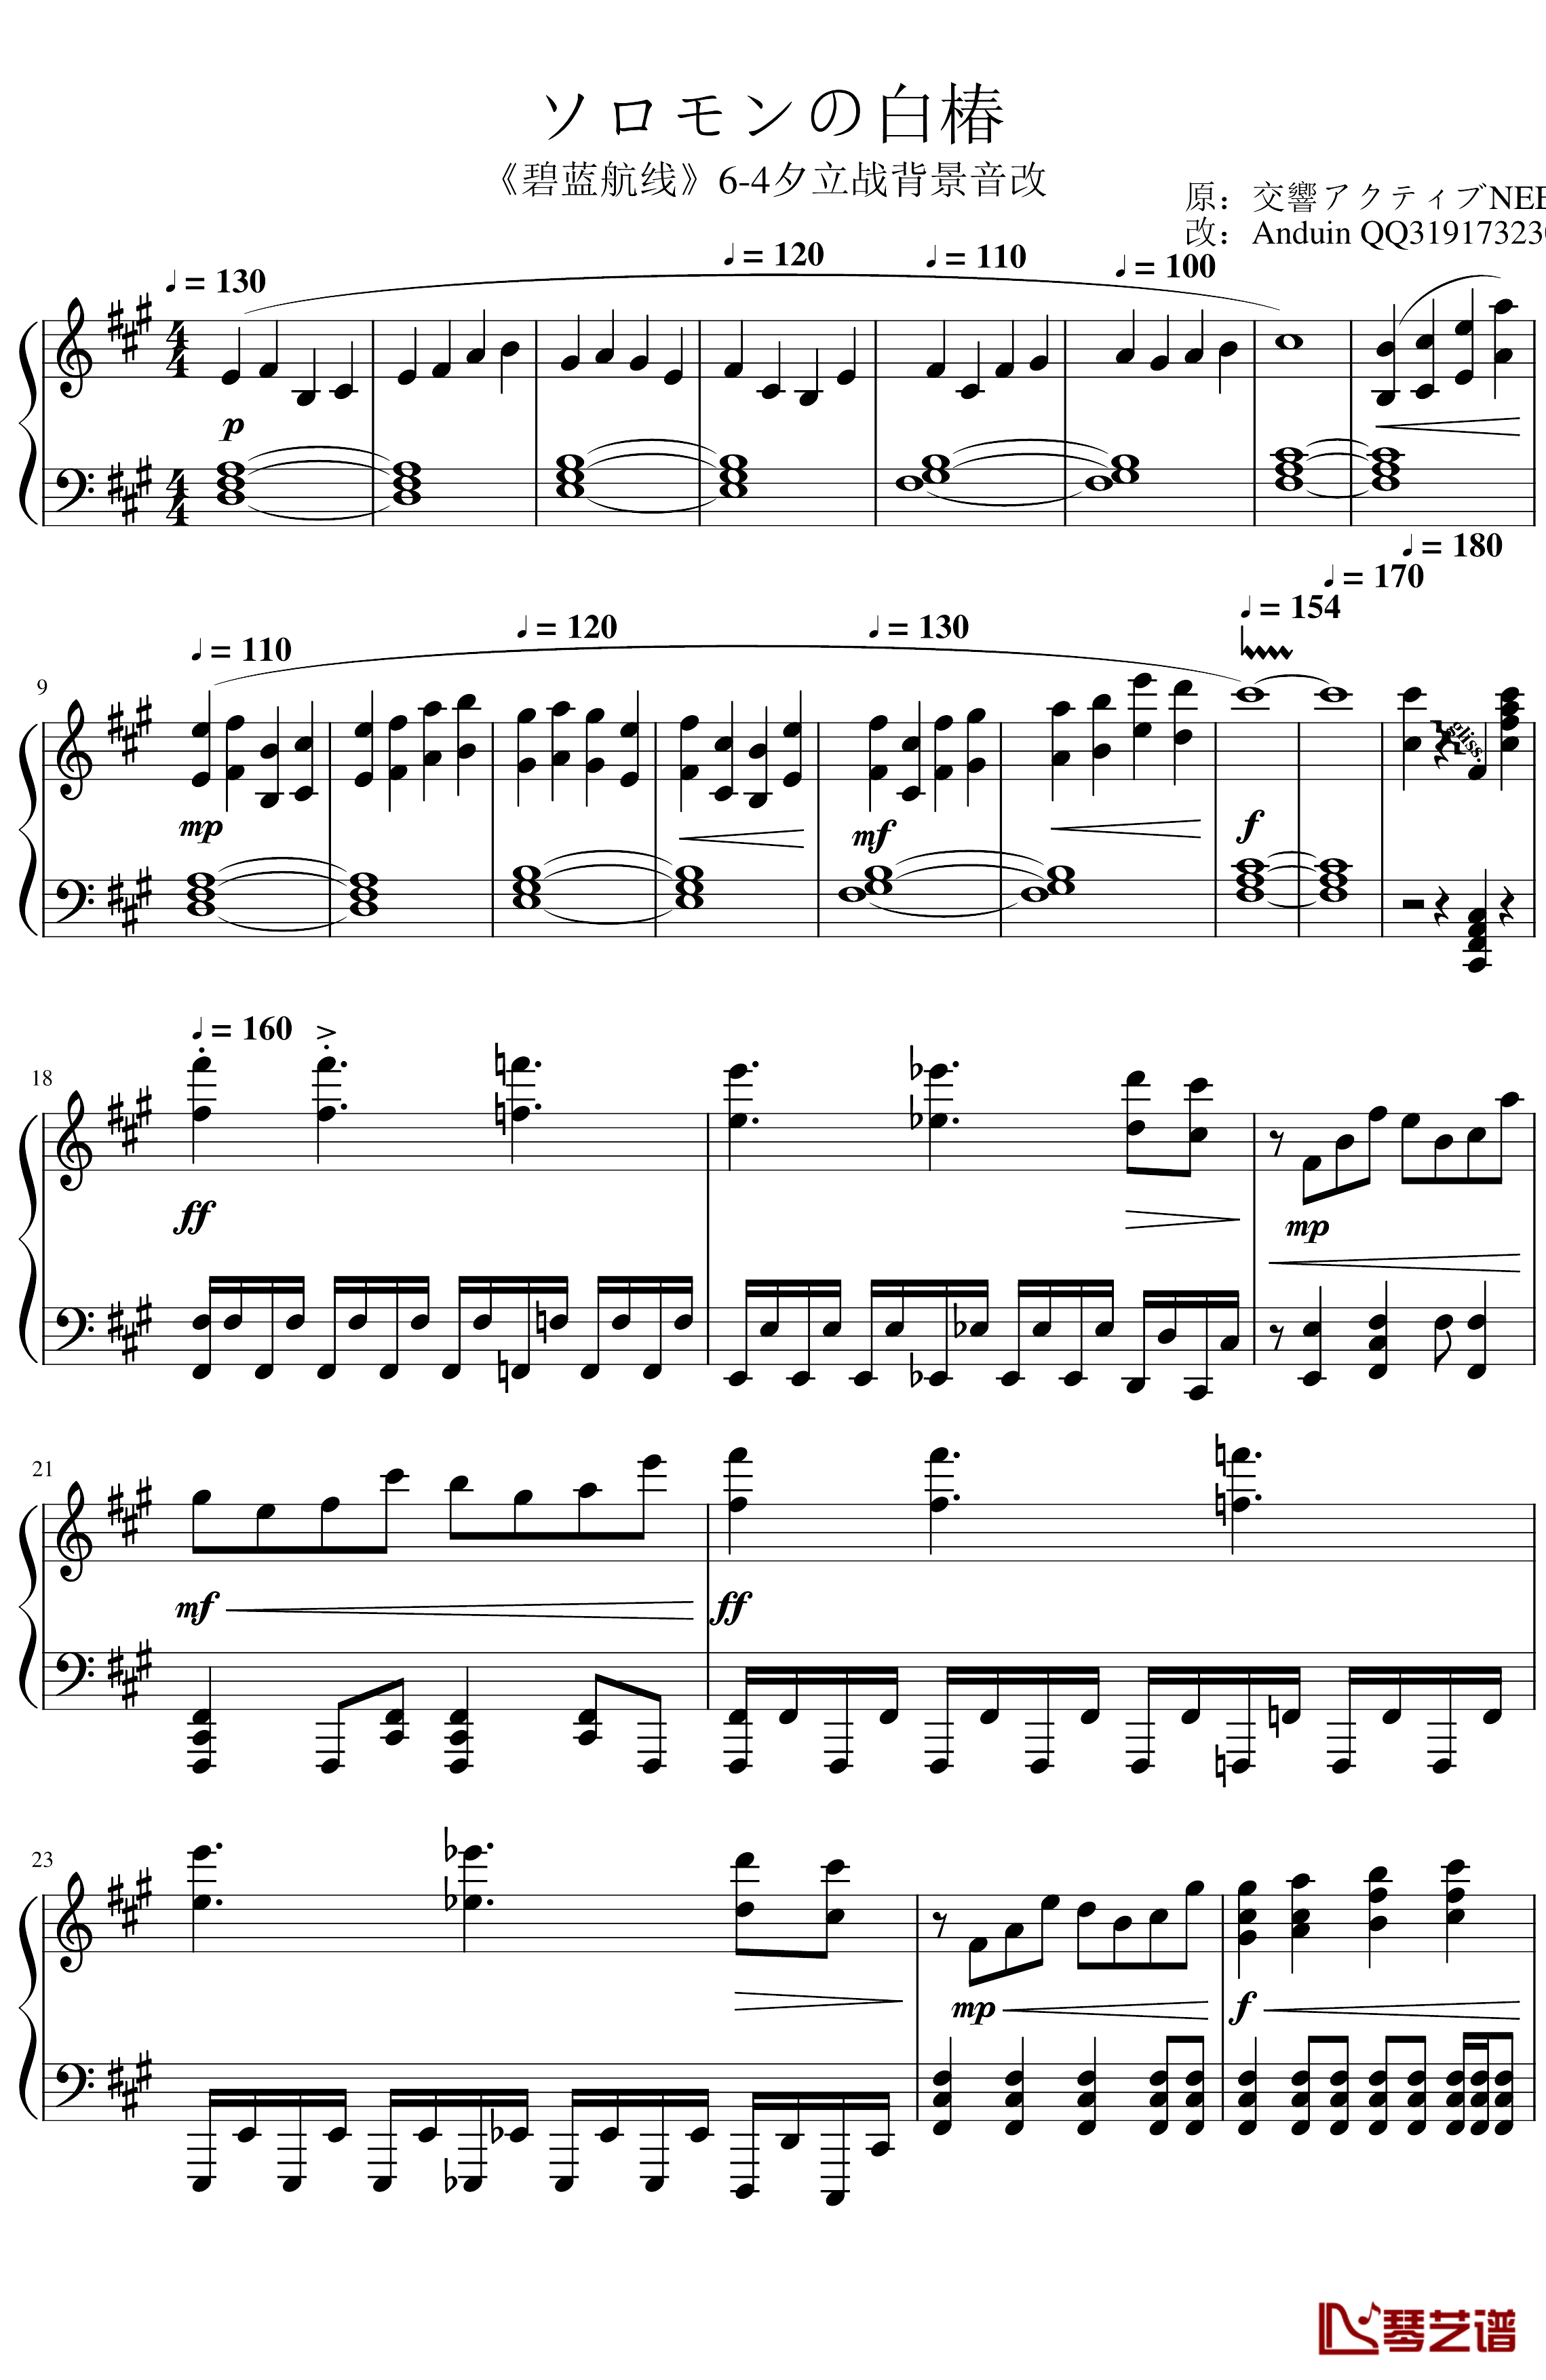 ソロモンの白椿钢琴谱-交响乐转钢琴版-碧蓝航线1